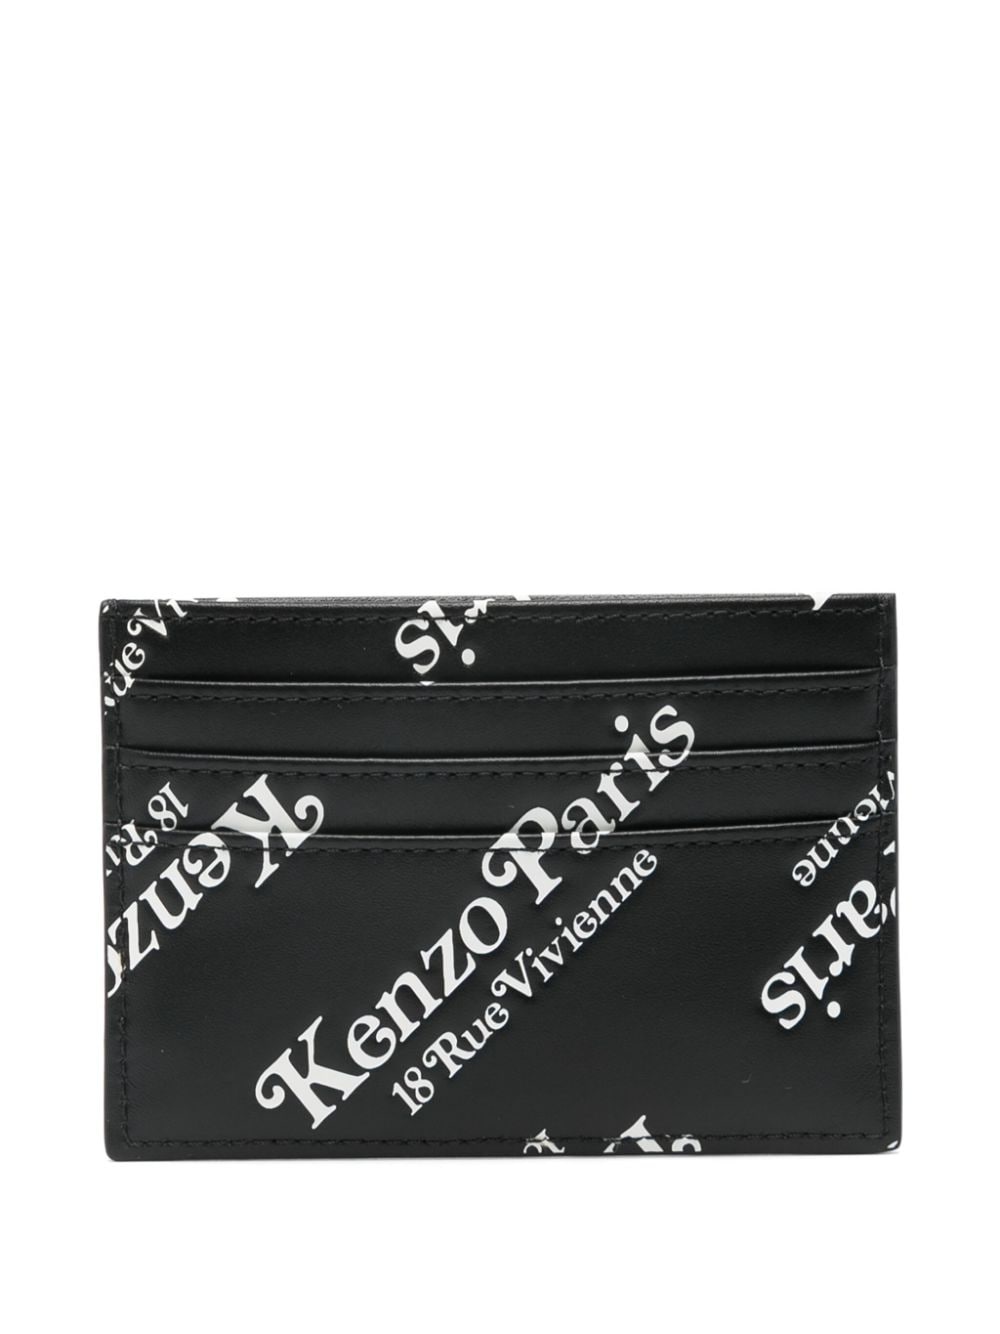 Kenzogram leather cardholder - 1